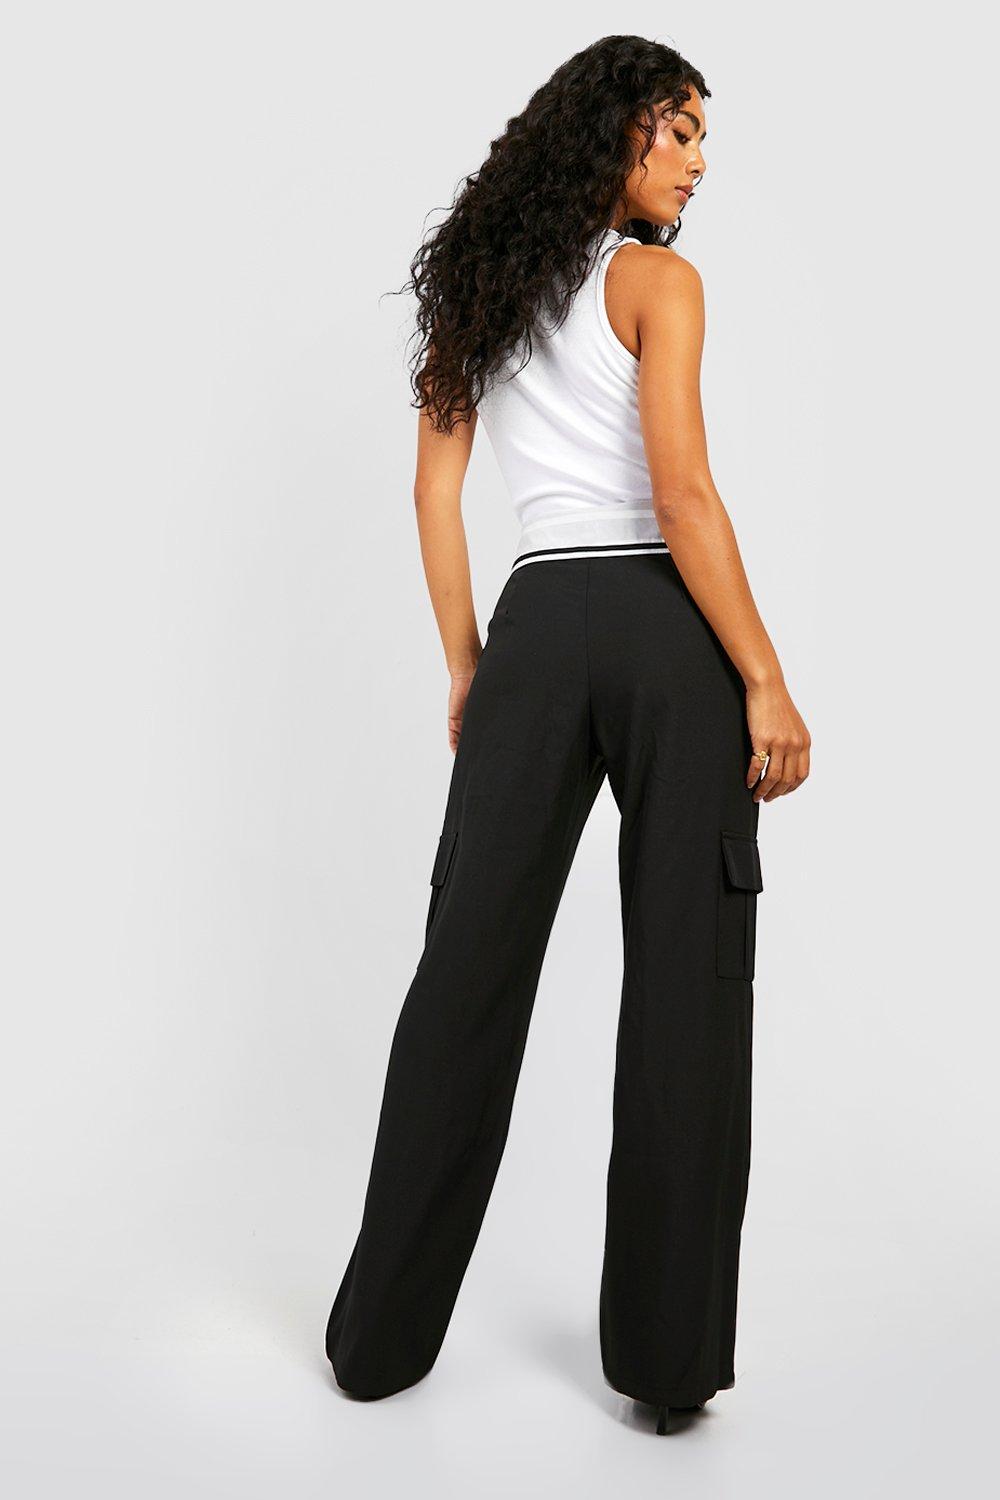 https://media.boohoo.com/i/boohoo/gzz72715_black_xl_1/female-black-foldover-waistband-dress-pants